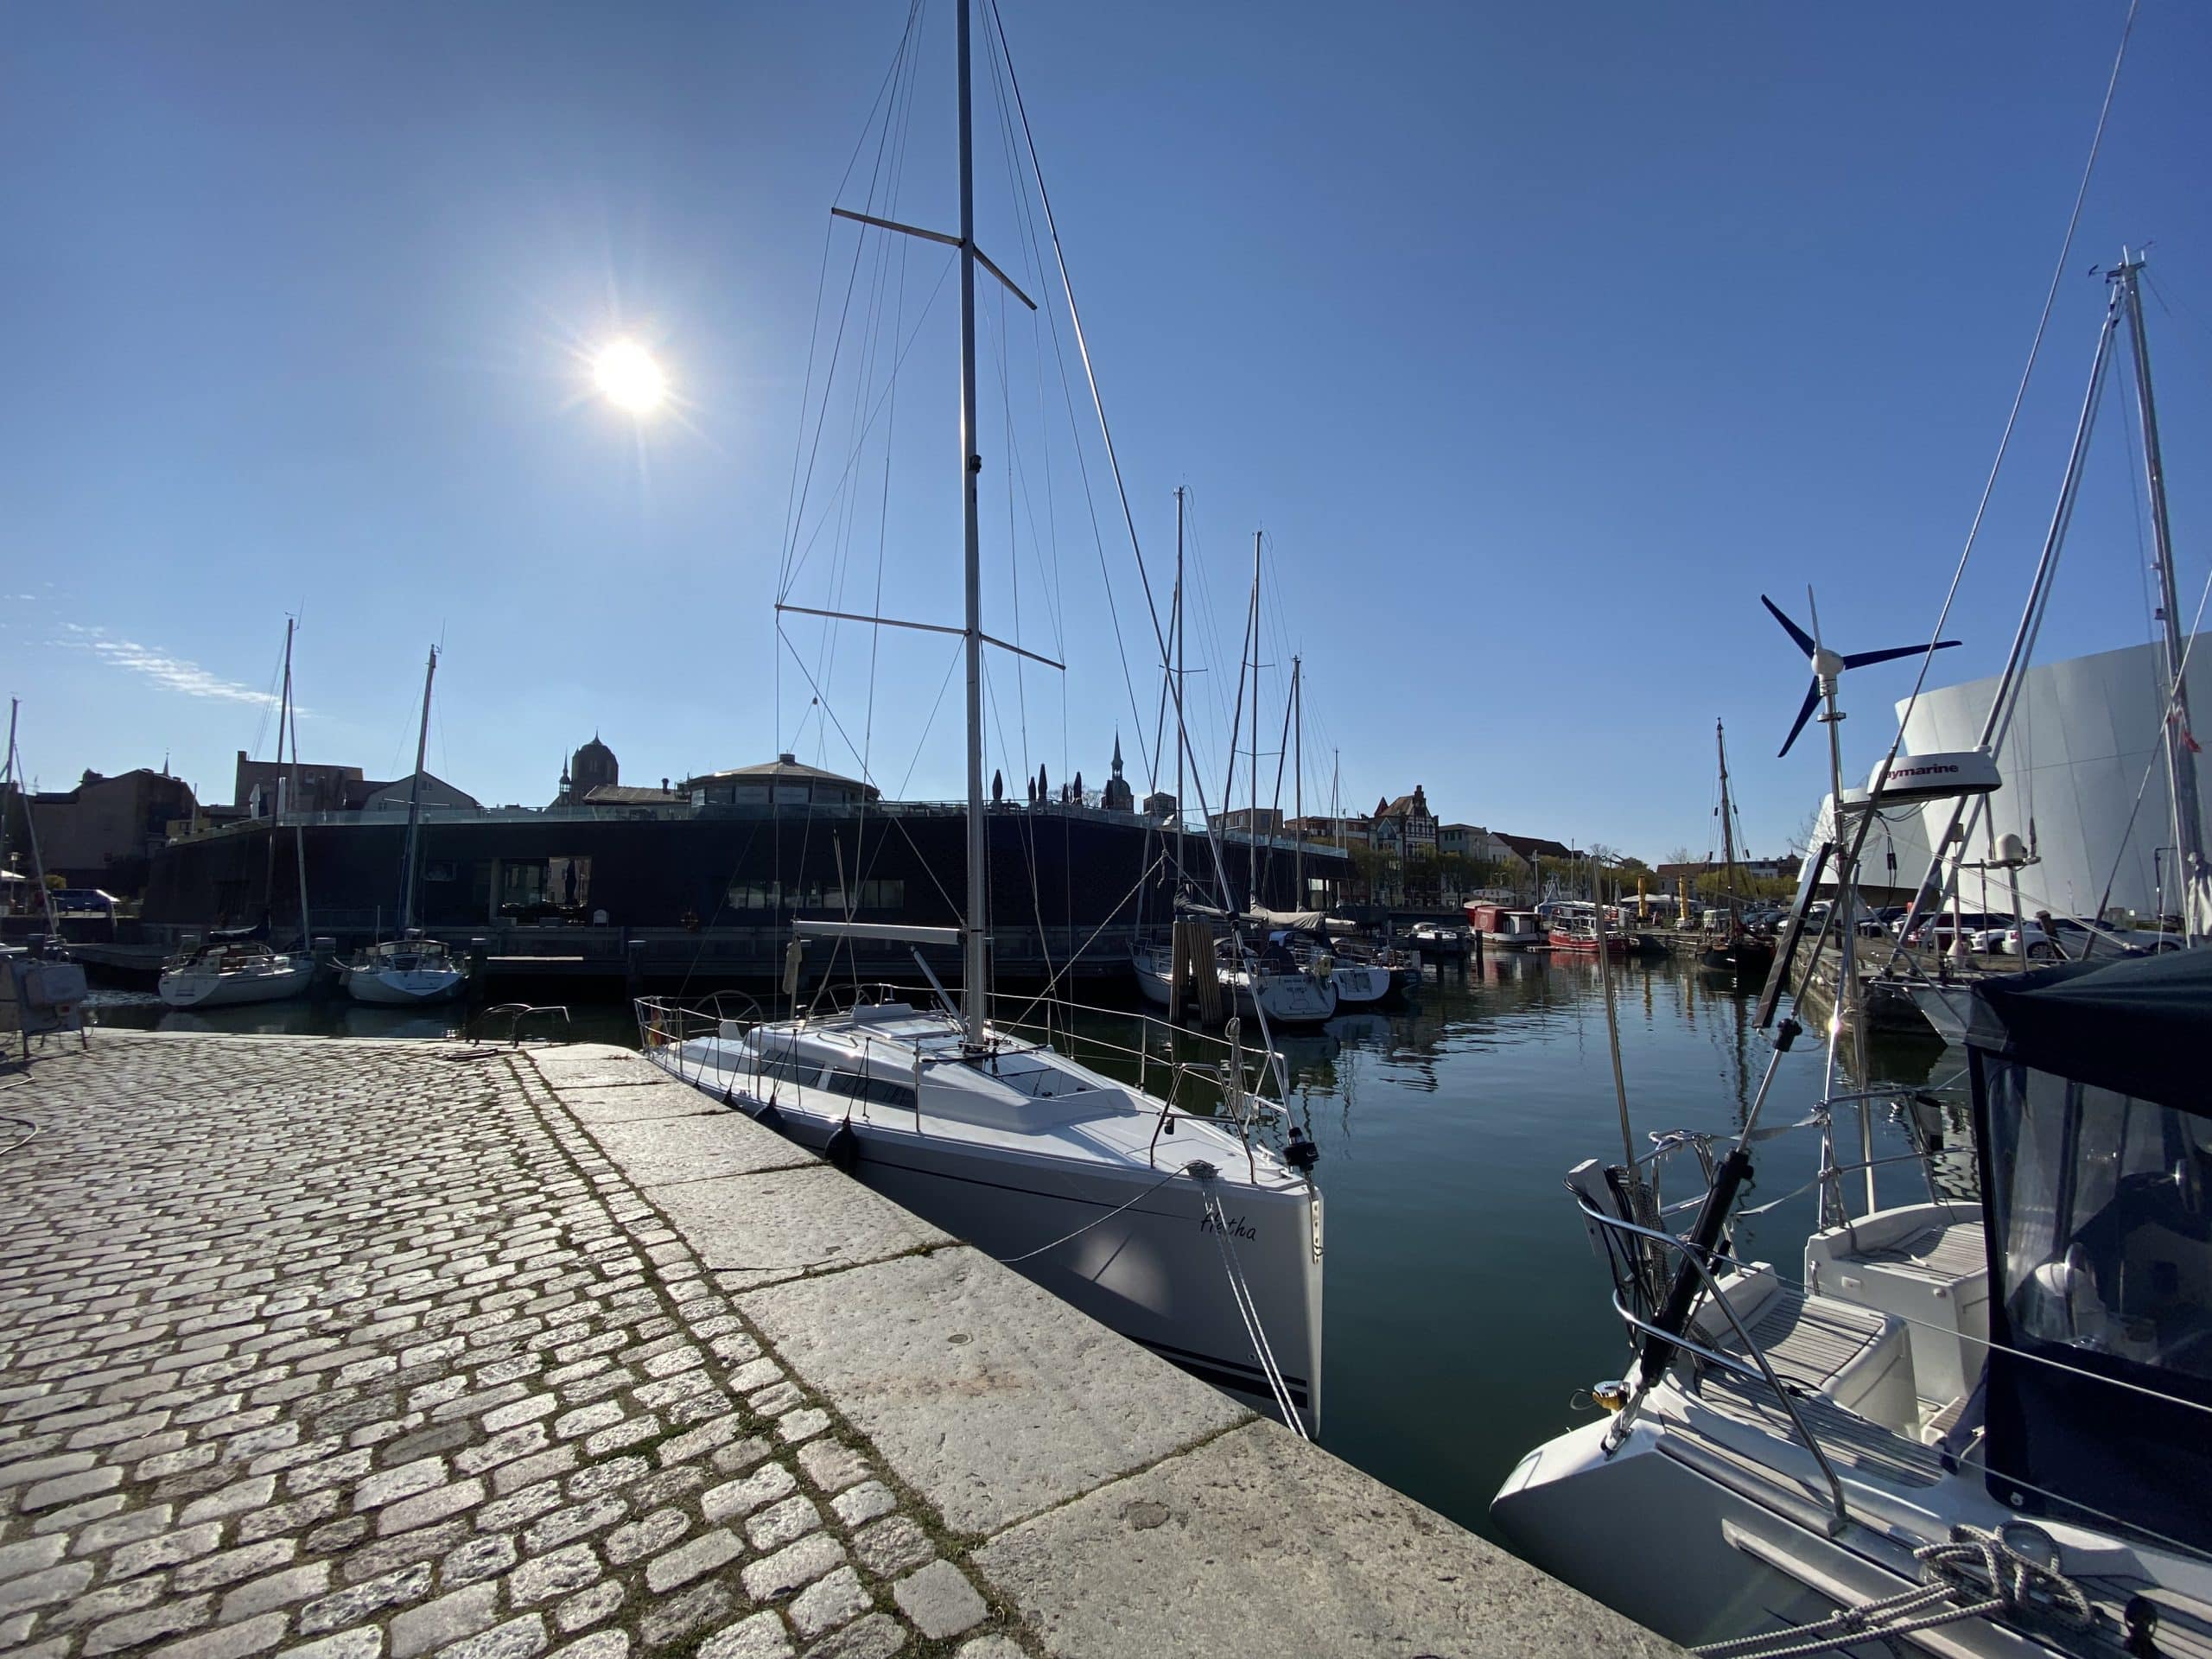 Blick auf den Hafen von Stralsund an der Ostsee. Foto: ARKM.media